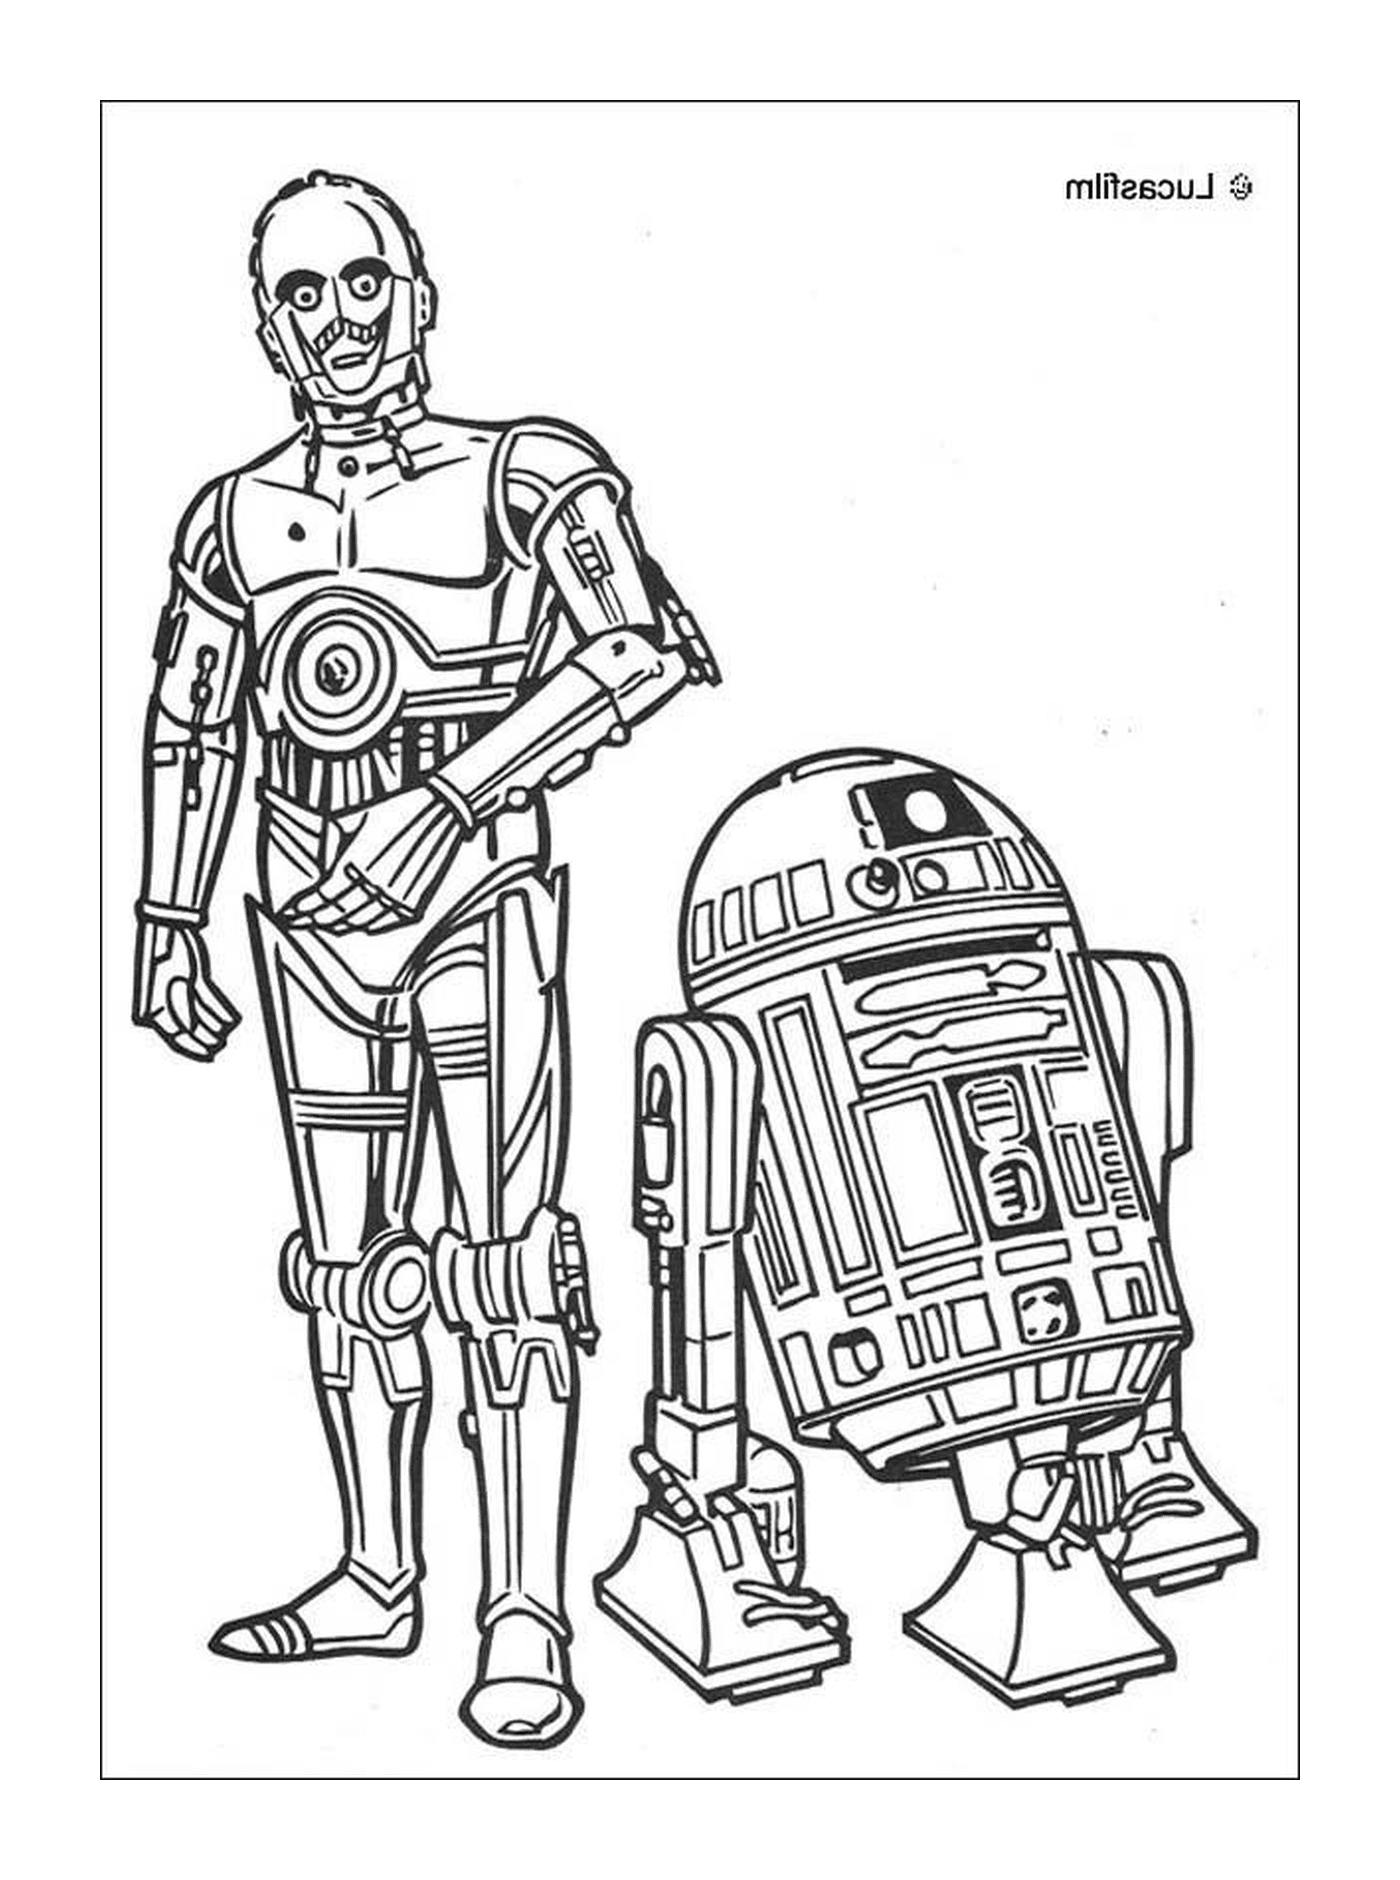   R2D2 et C3PO, compagnons 